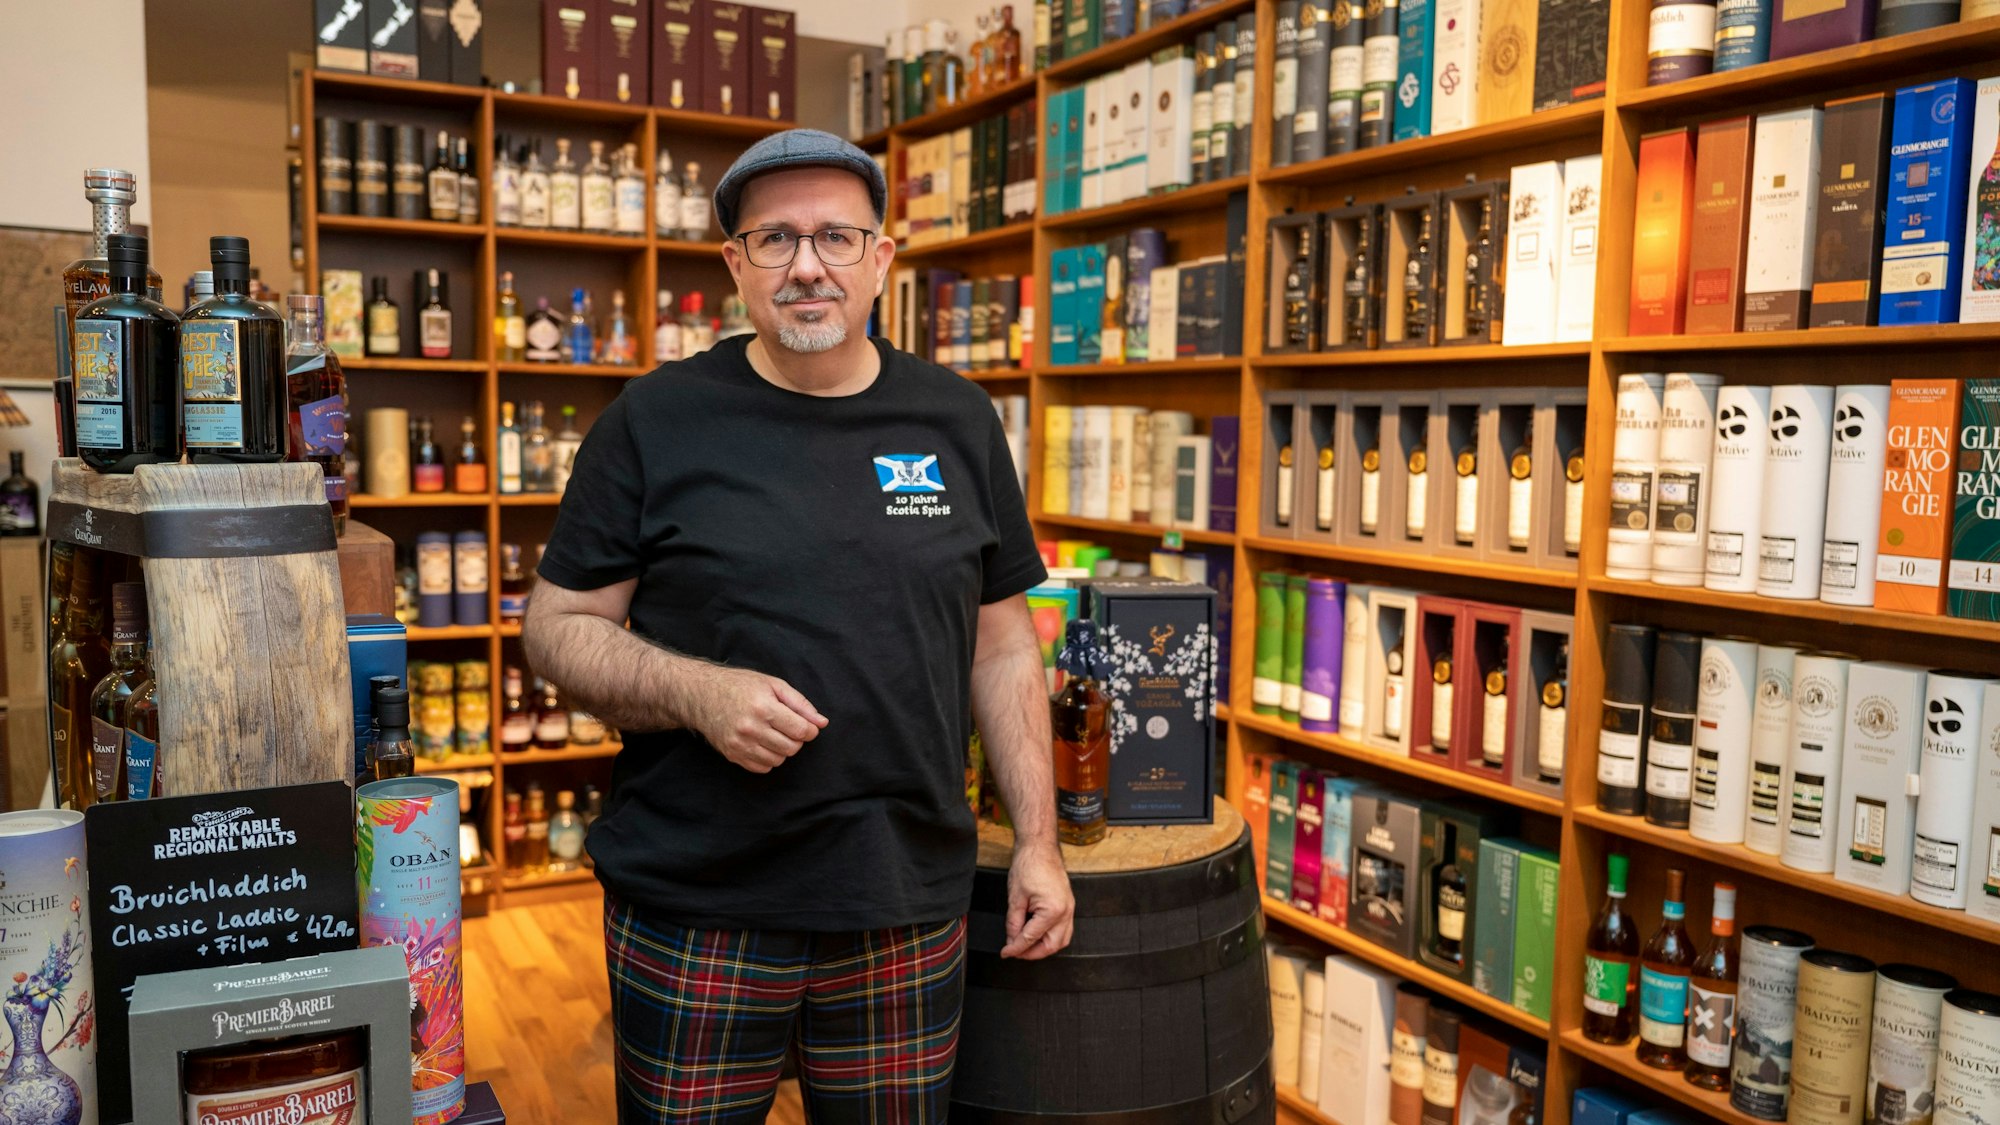 Peter Klas steht in seinem Whisky-Spezialgeschäft vor einem Wandregal mit Flaschen.